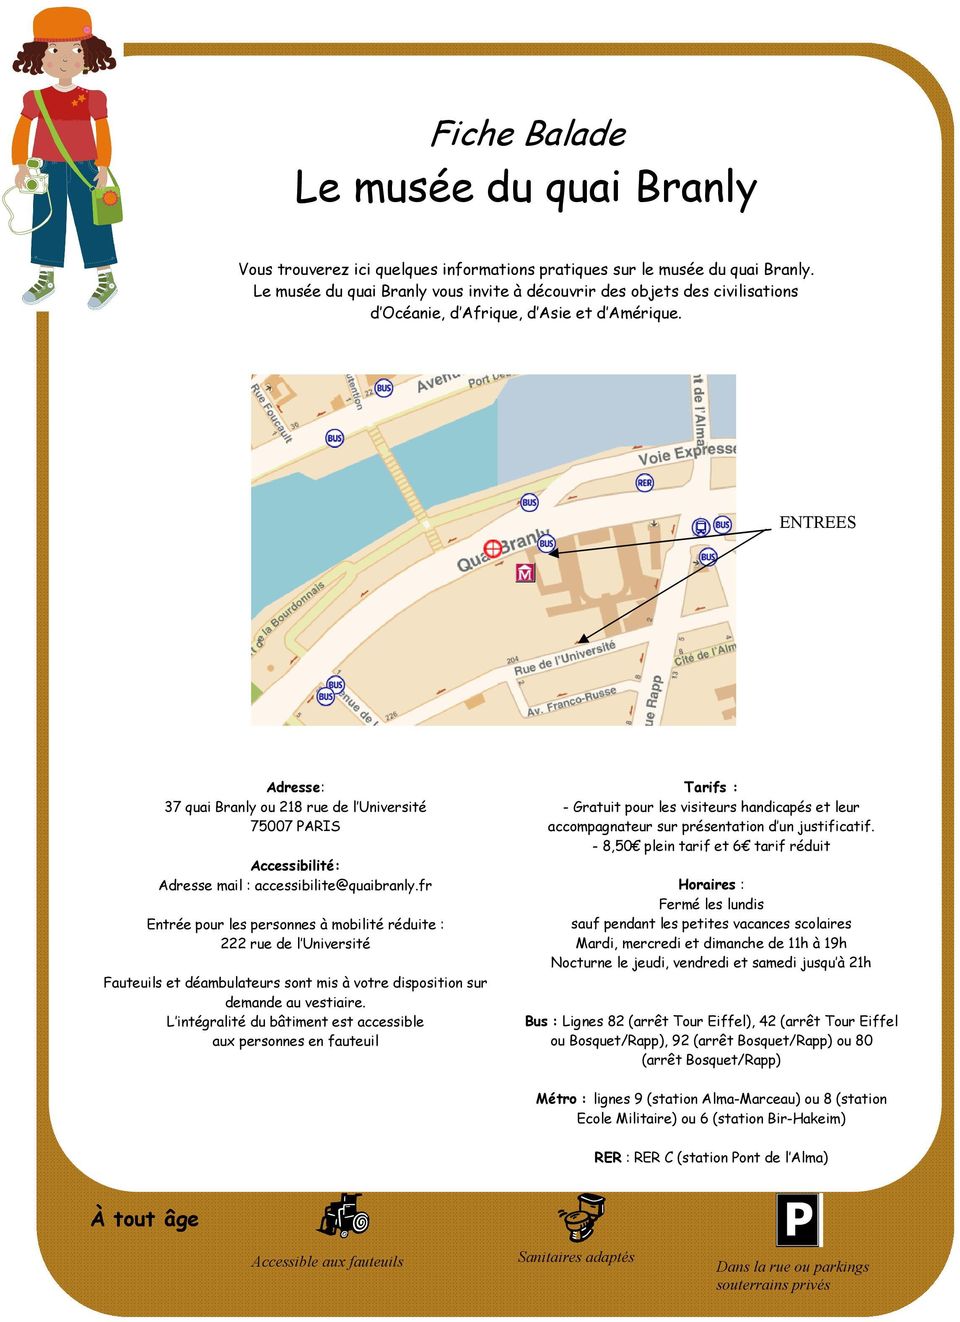 ENTREES Adresse: 37 quai Branly ou 218 rue de l Université 75007 PARIS Accessibilité: Adresse mail : accessibilite@quaibranly.